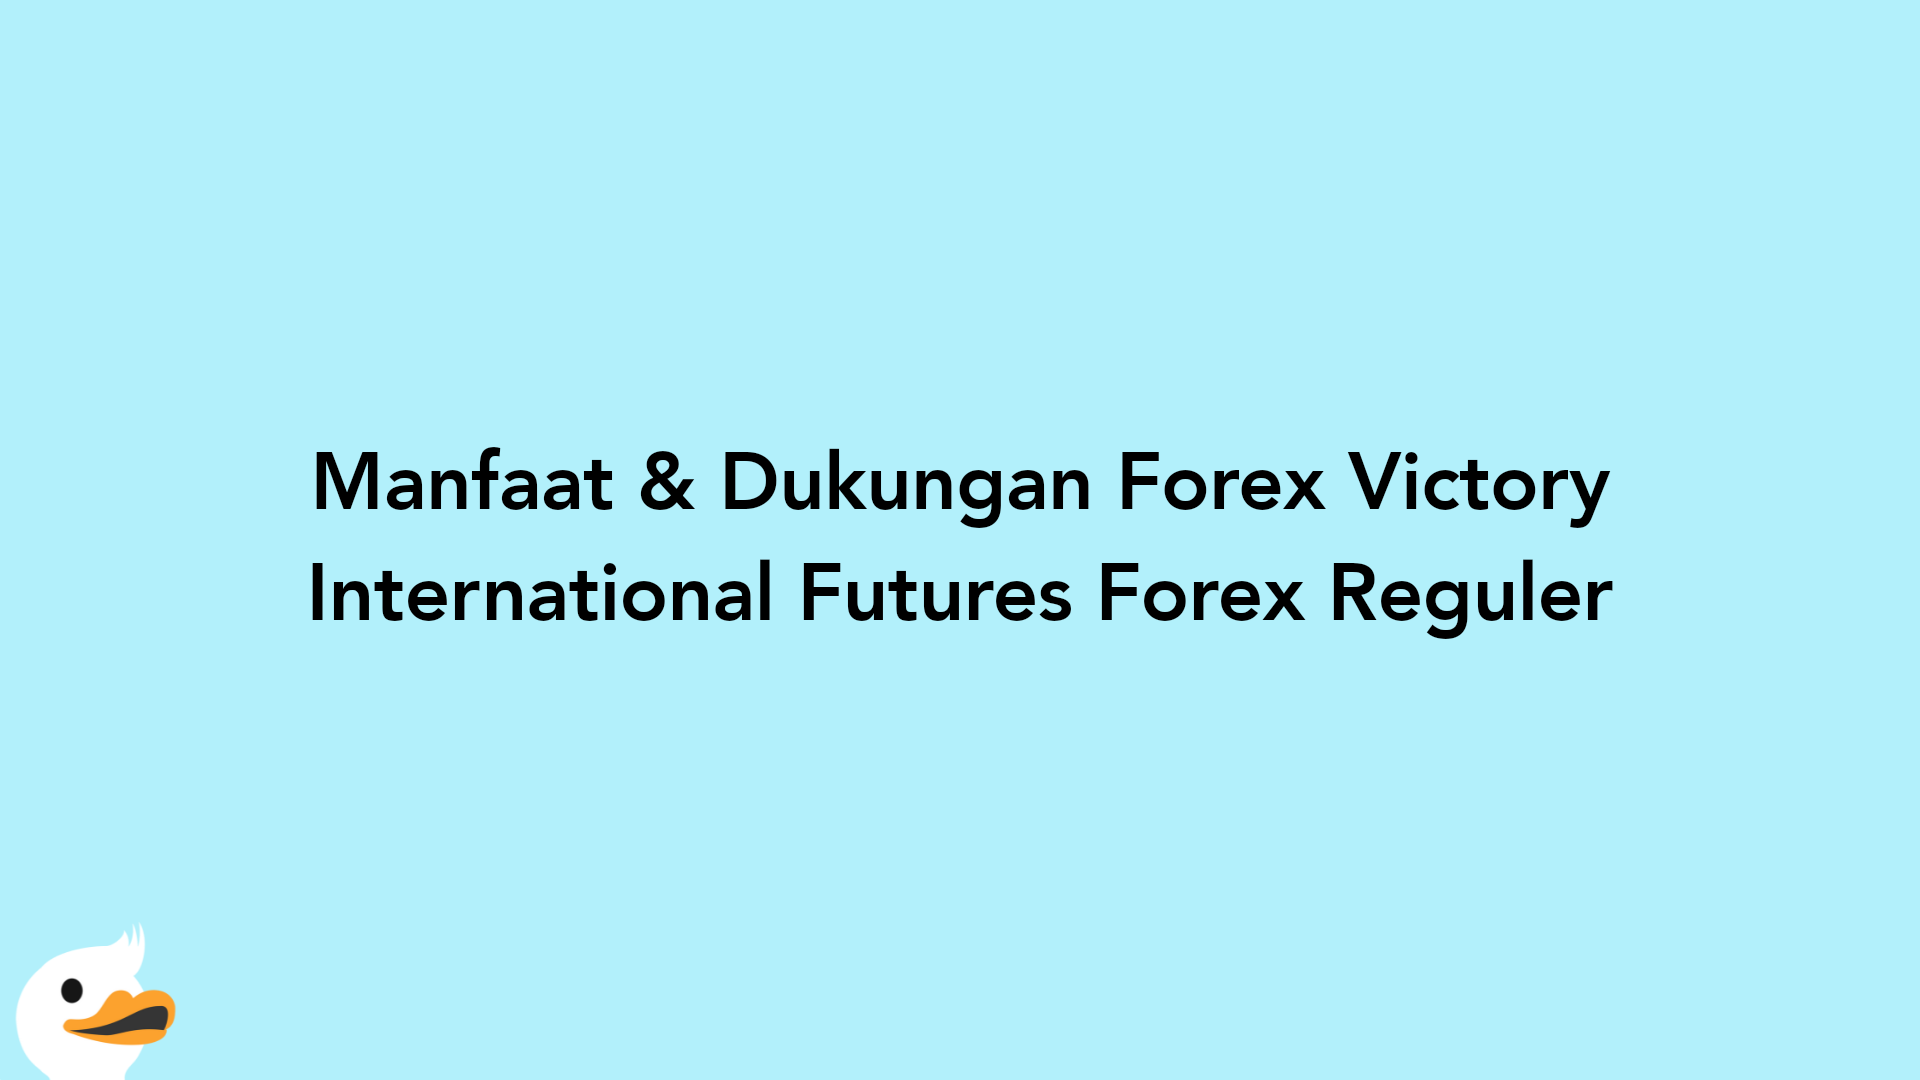 Manfaat & Dukungan Forex Victory International Futures Forex Reguler